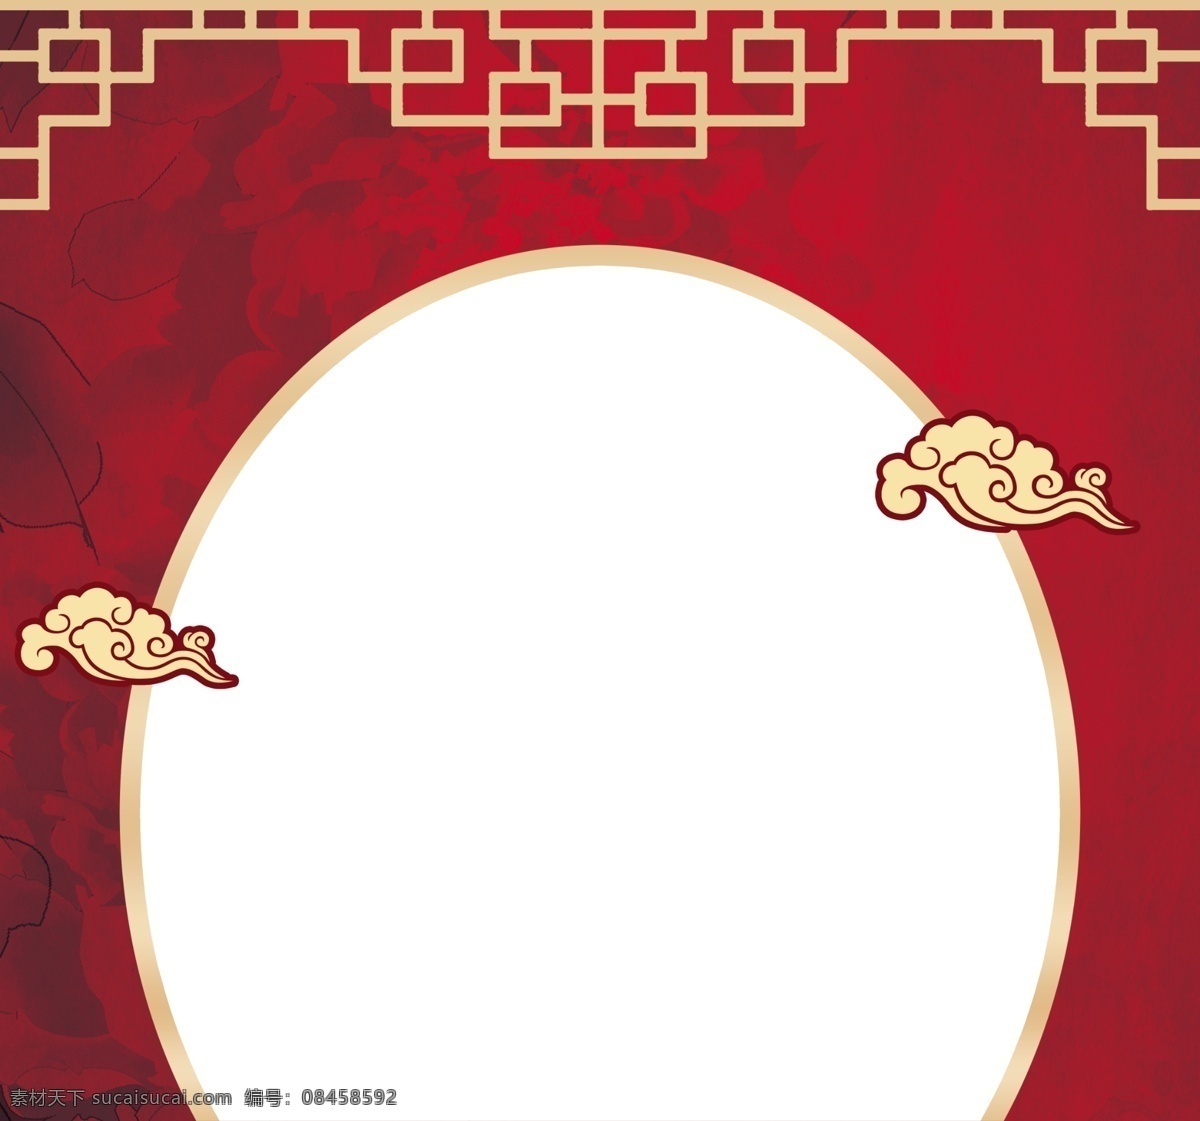 中式造型门 中式门 拱门 红色拱门 龙凤 囍 金色屋檐 婚礼背景 婚礼舞台背景 舞台背景 红色背景 红色舞台背景 中式婚礼 广告